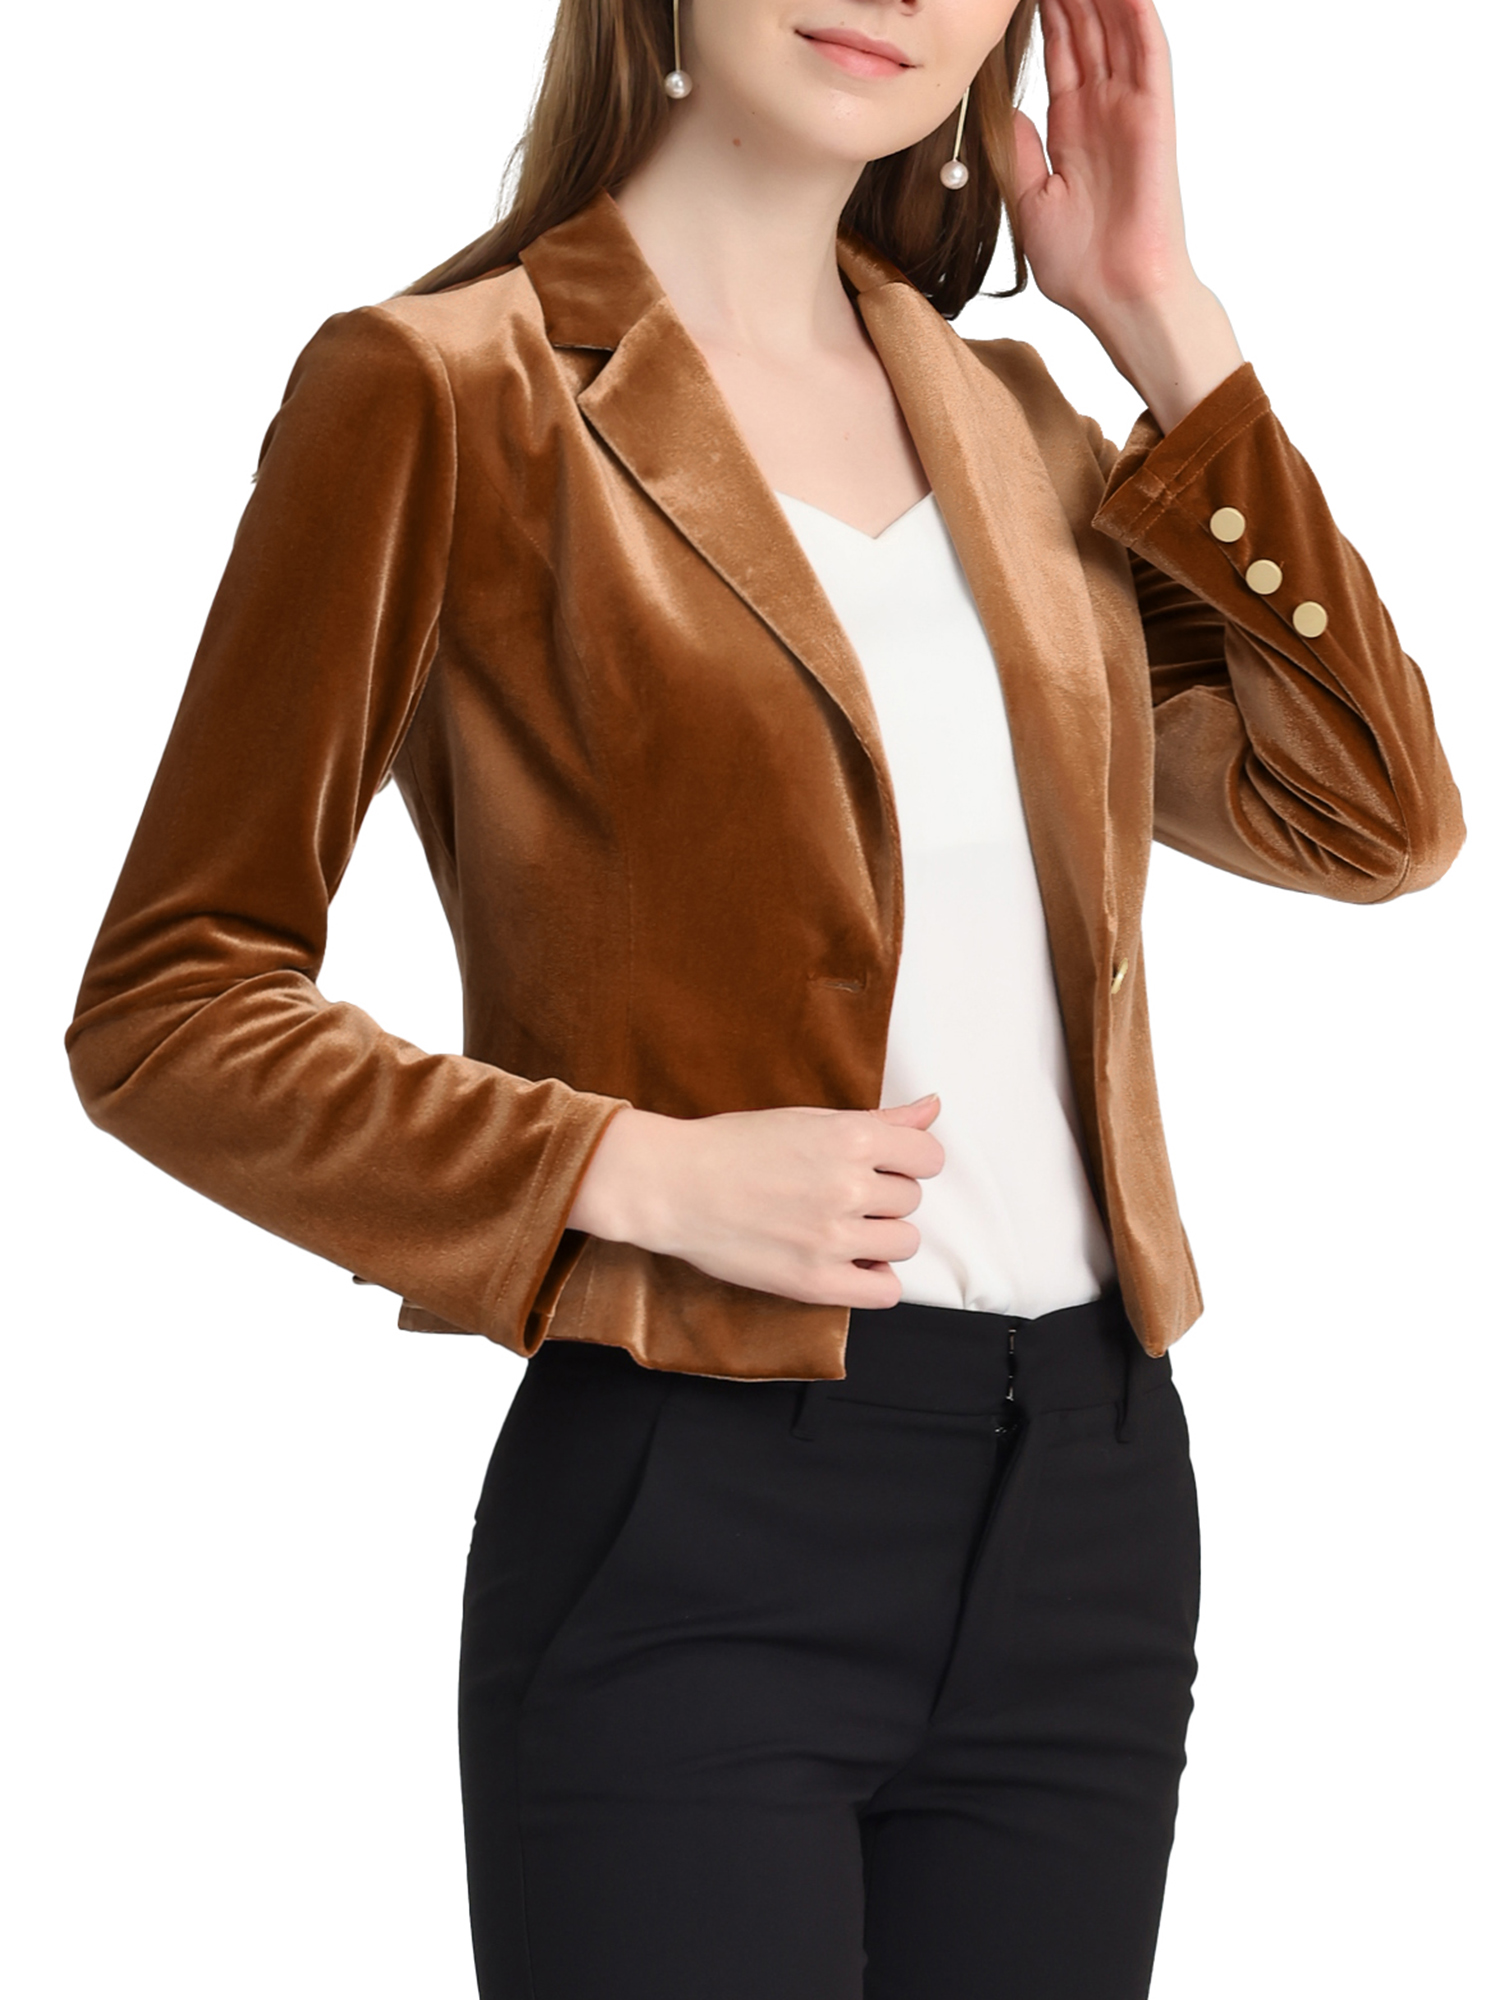 Unique Bargains Women's Button Front Velvet Blazer Lapel Office Crop Suit Jacket S Brown - image 4 of 6